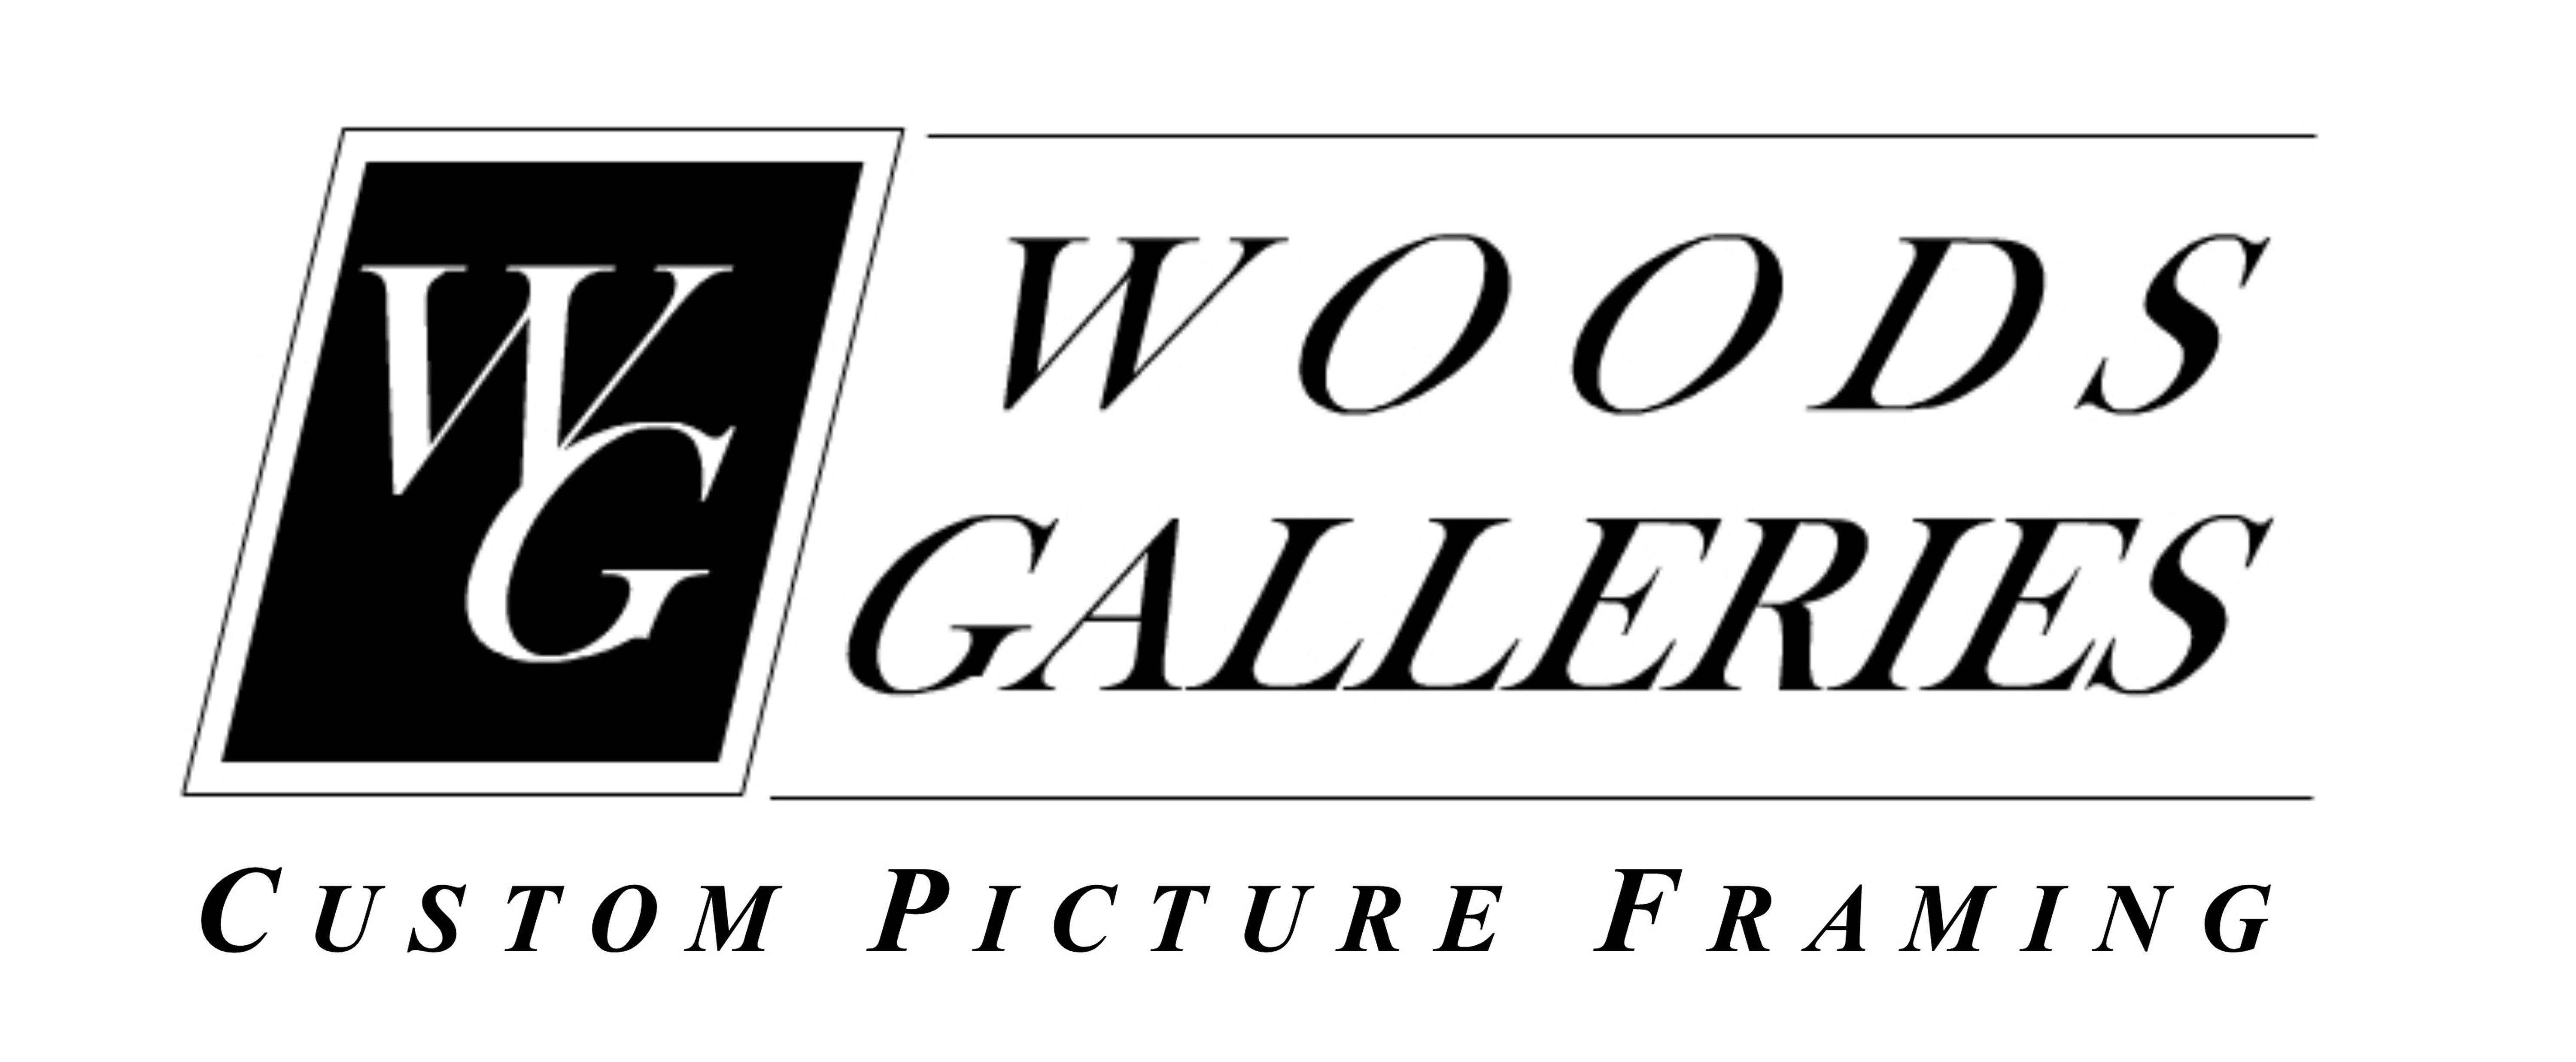 Framing Logo - Woods Galleries custom picture framing [logo]. PhanArt : Music